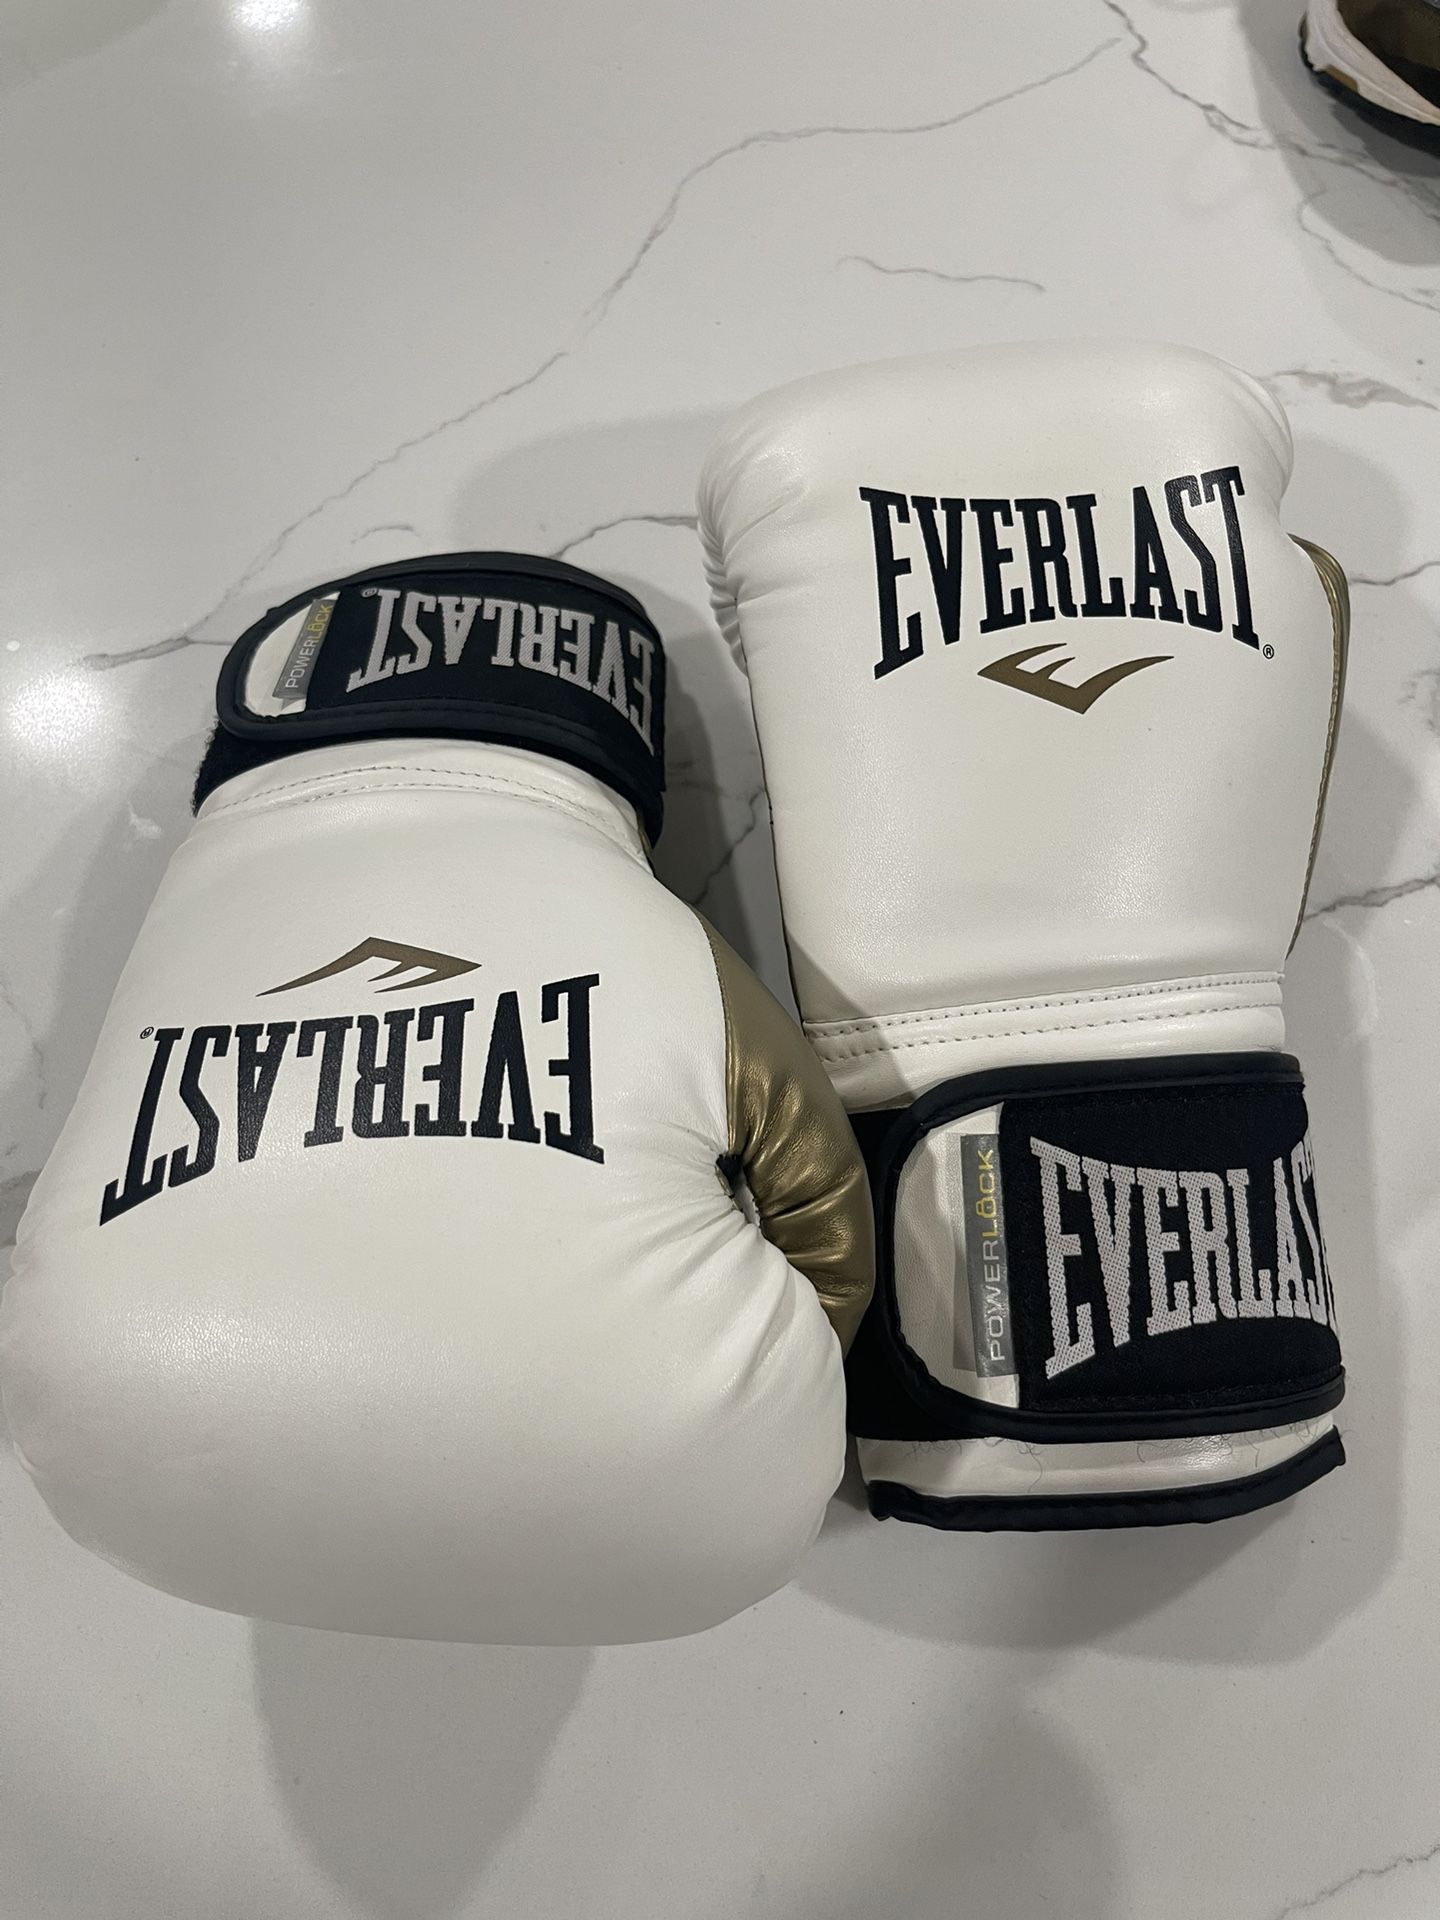 Everlast Boxing Gloves - 12 Oz